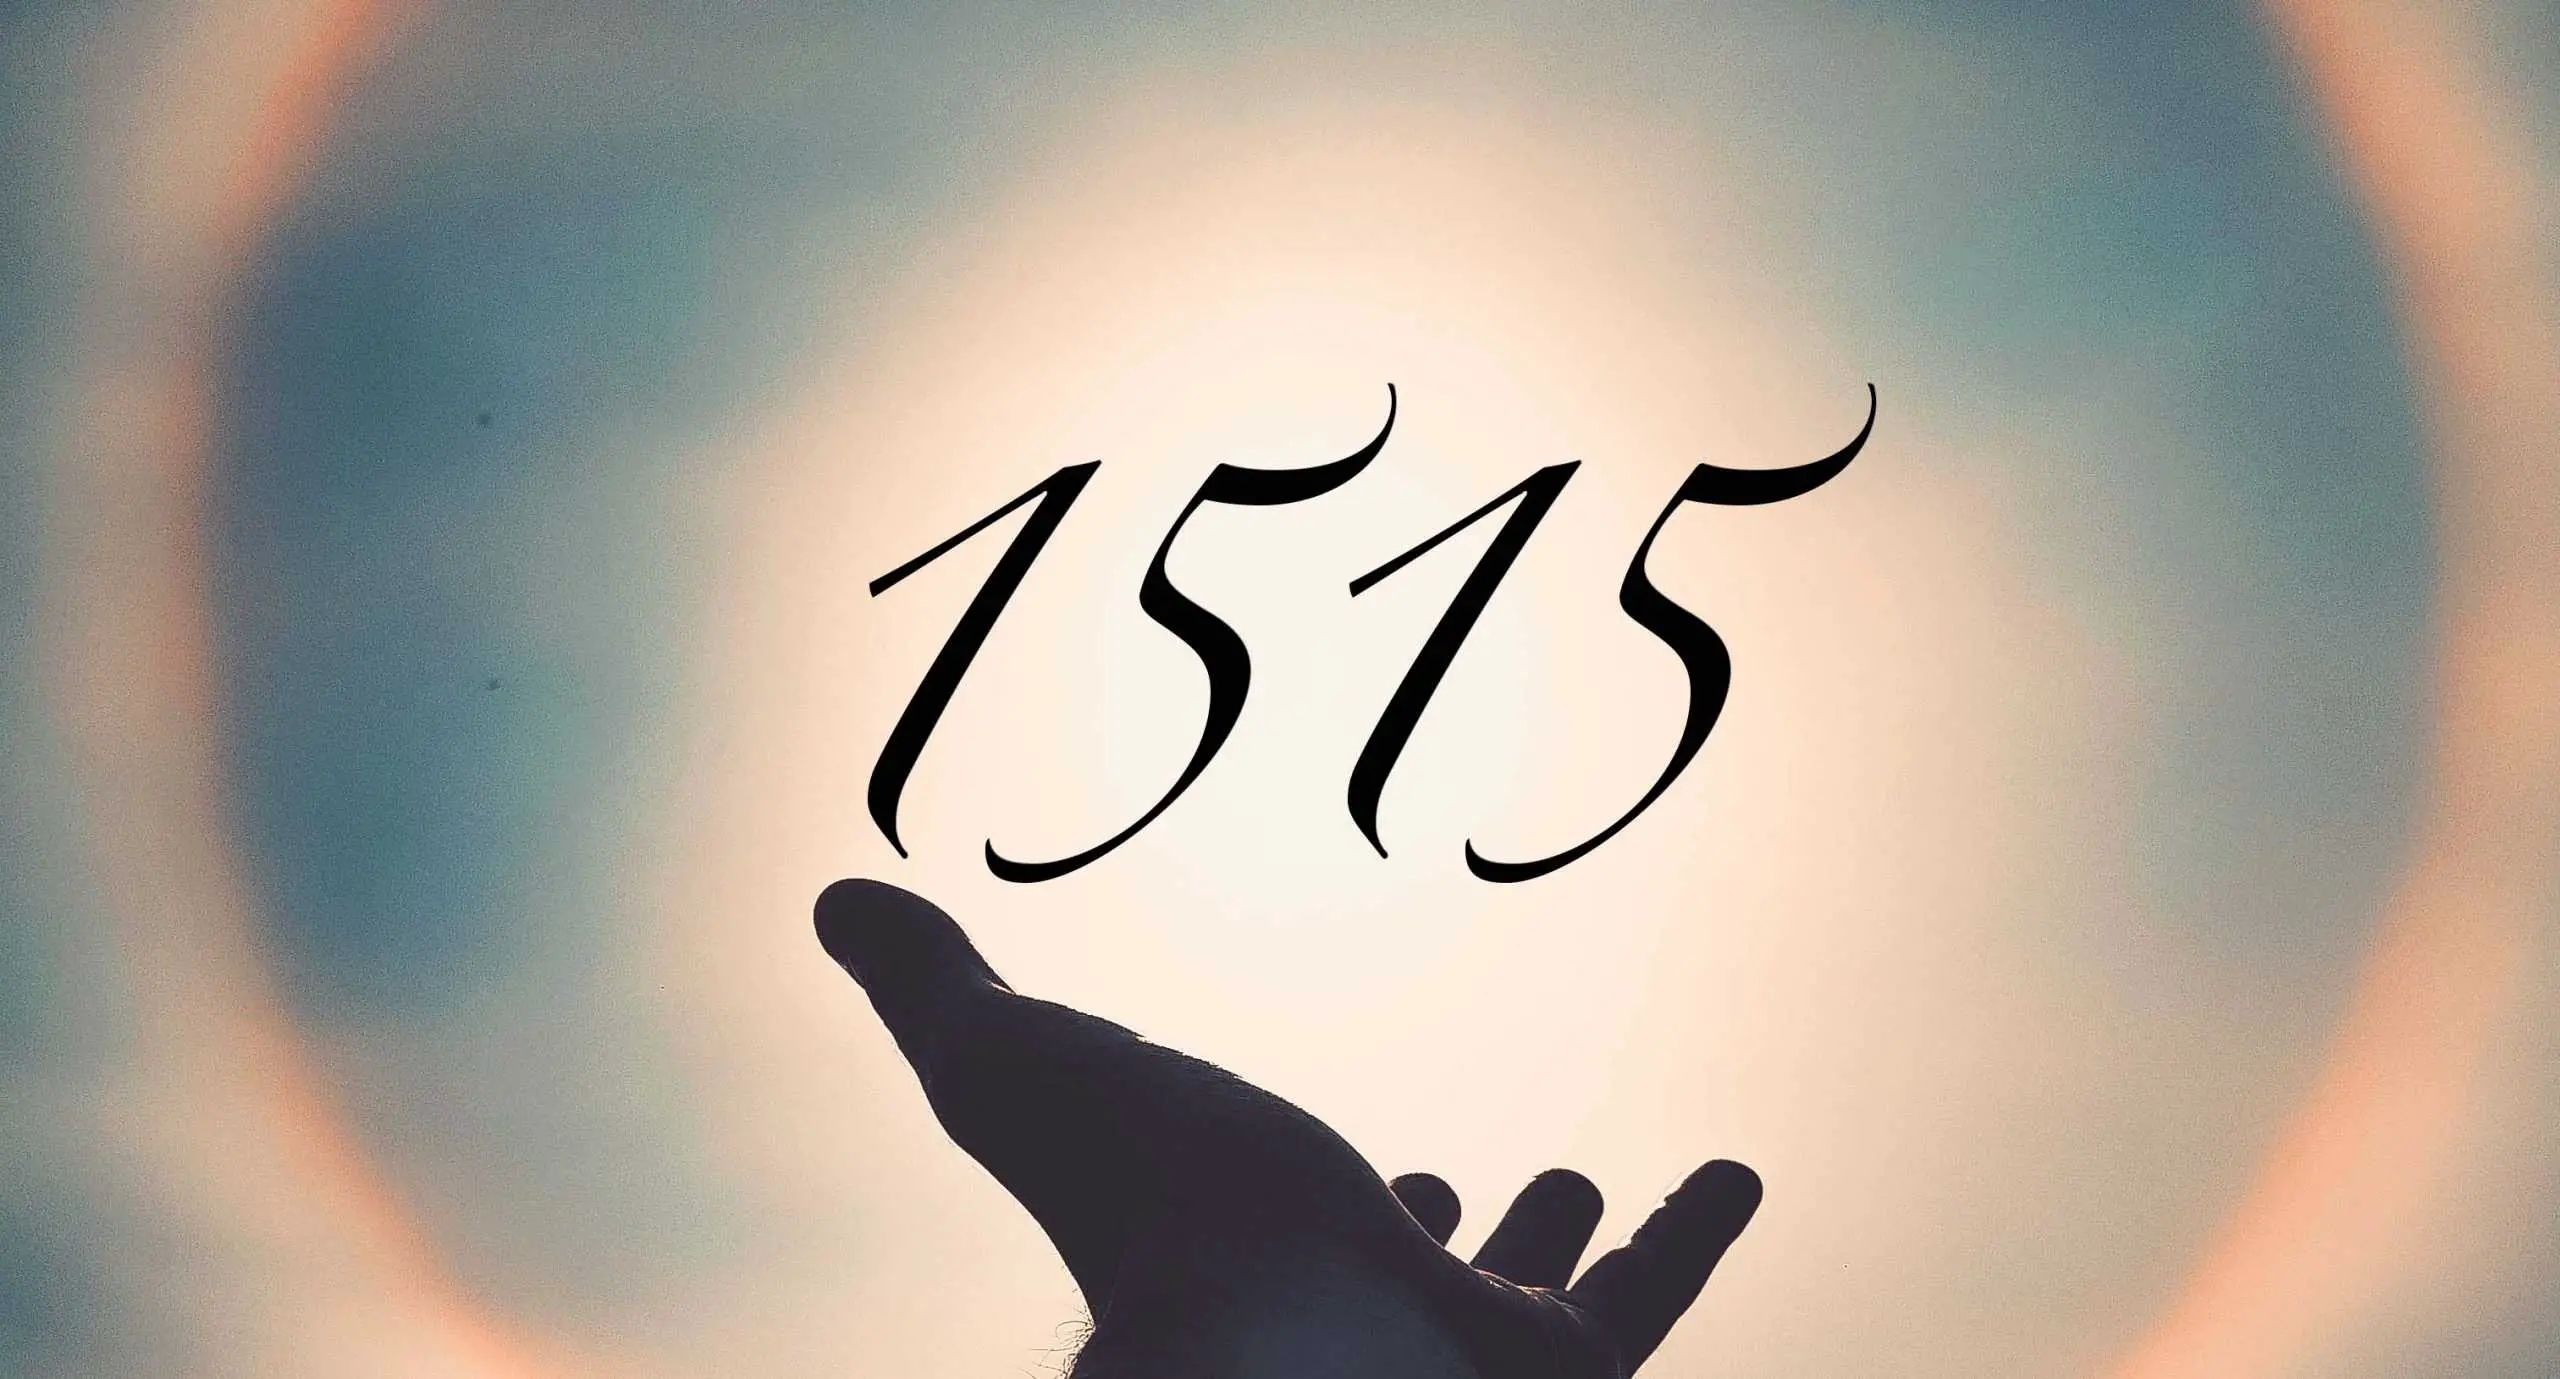 Signification du nombre 1515